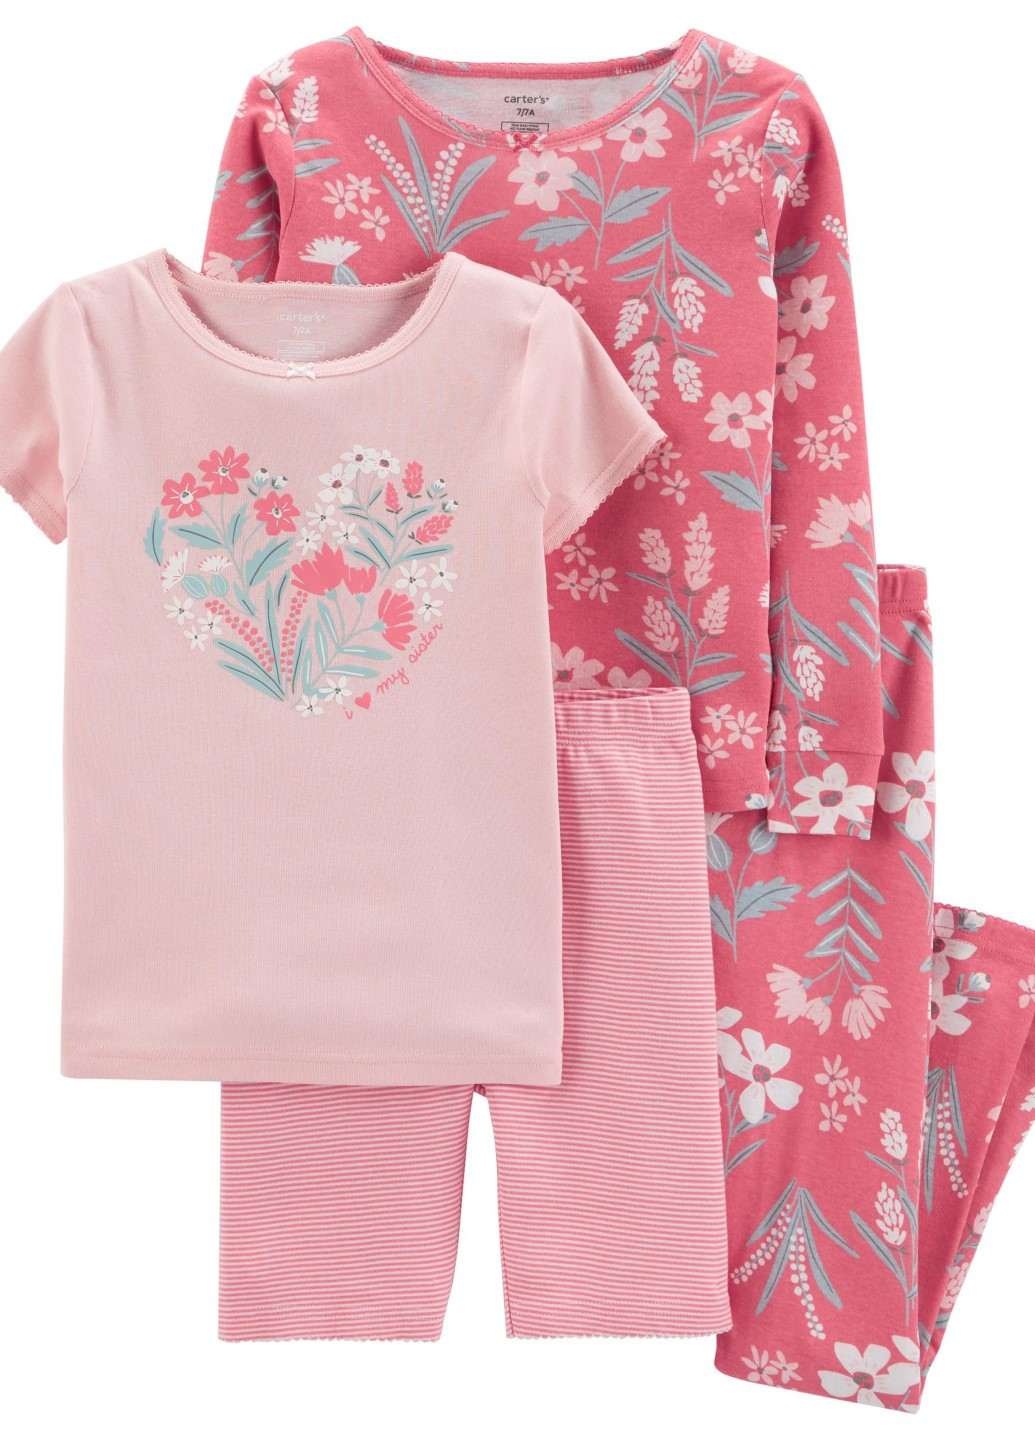 Розовая всесезон пижама для девочки carters футболка + шорты Carter's